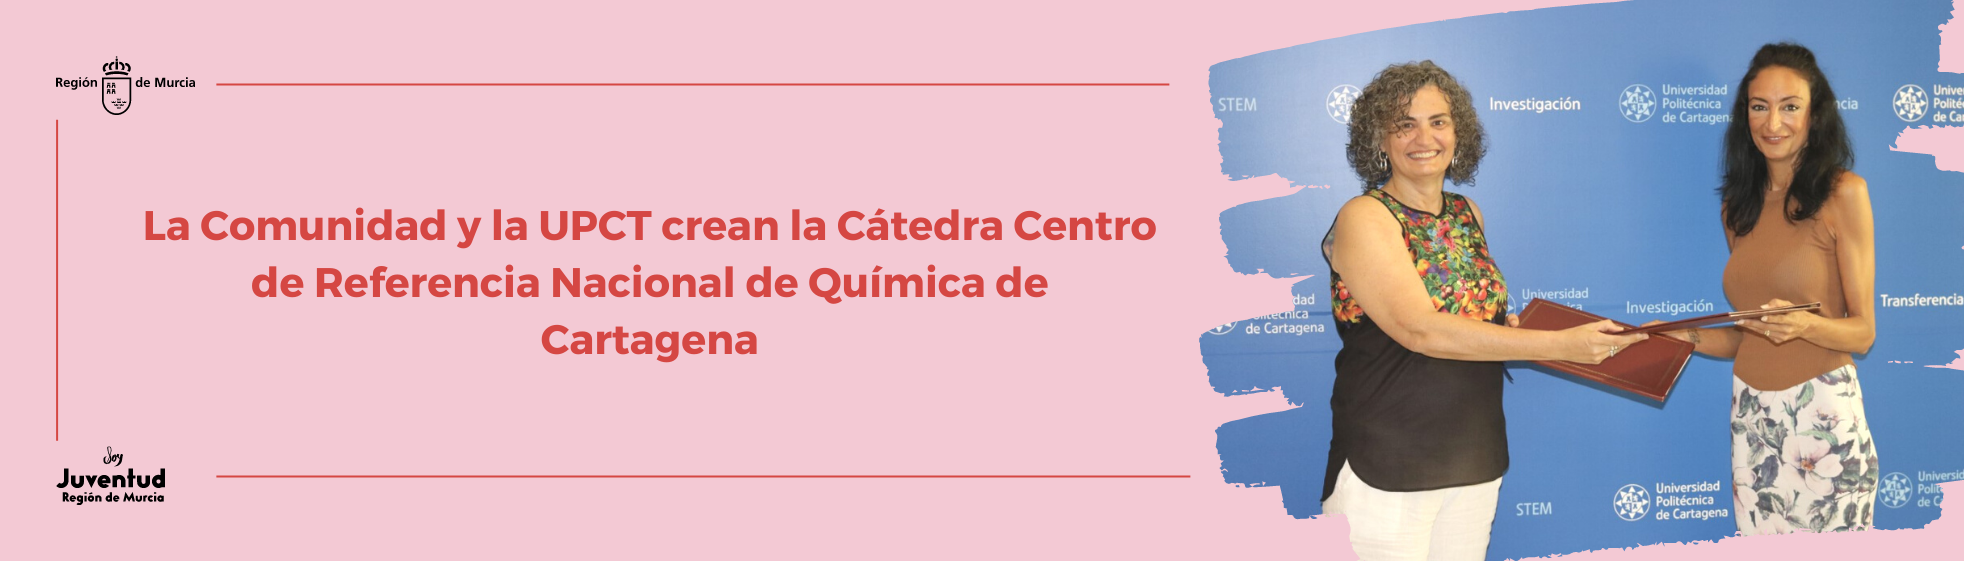 La Comunidad y la UPCT crean la Cátedra Centro de Referencia Nacional de Química de Cartagena